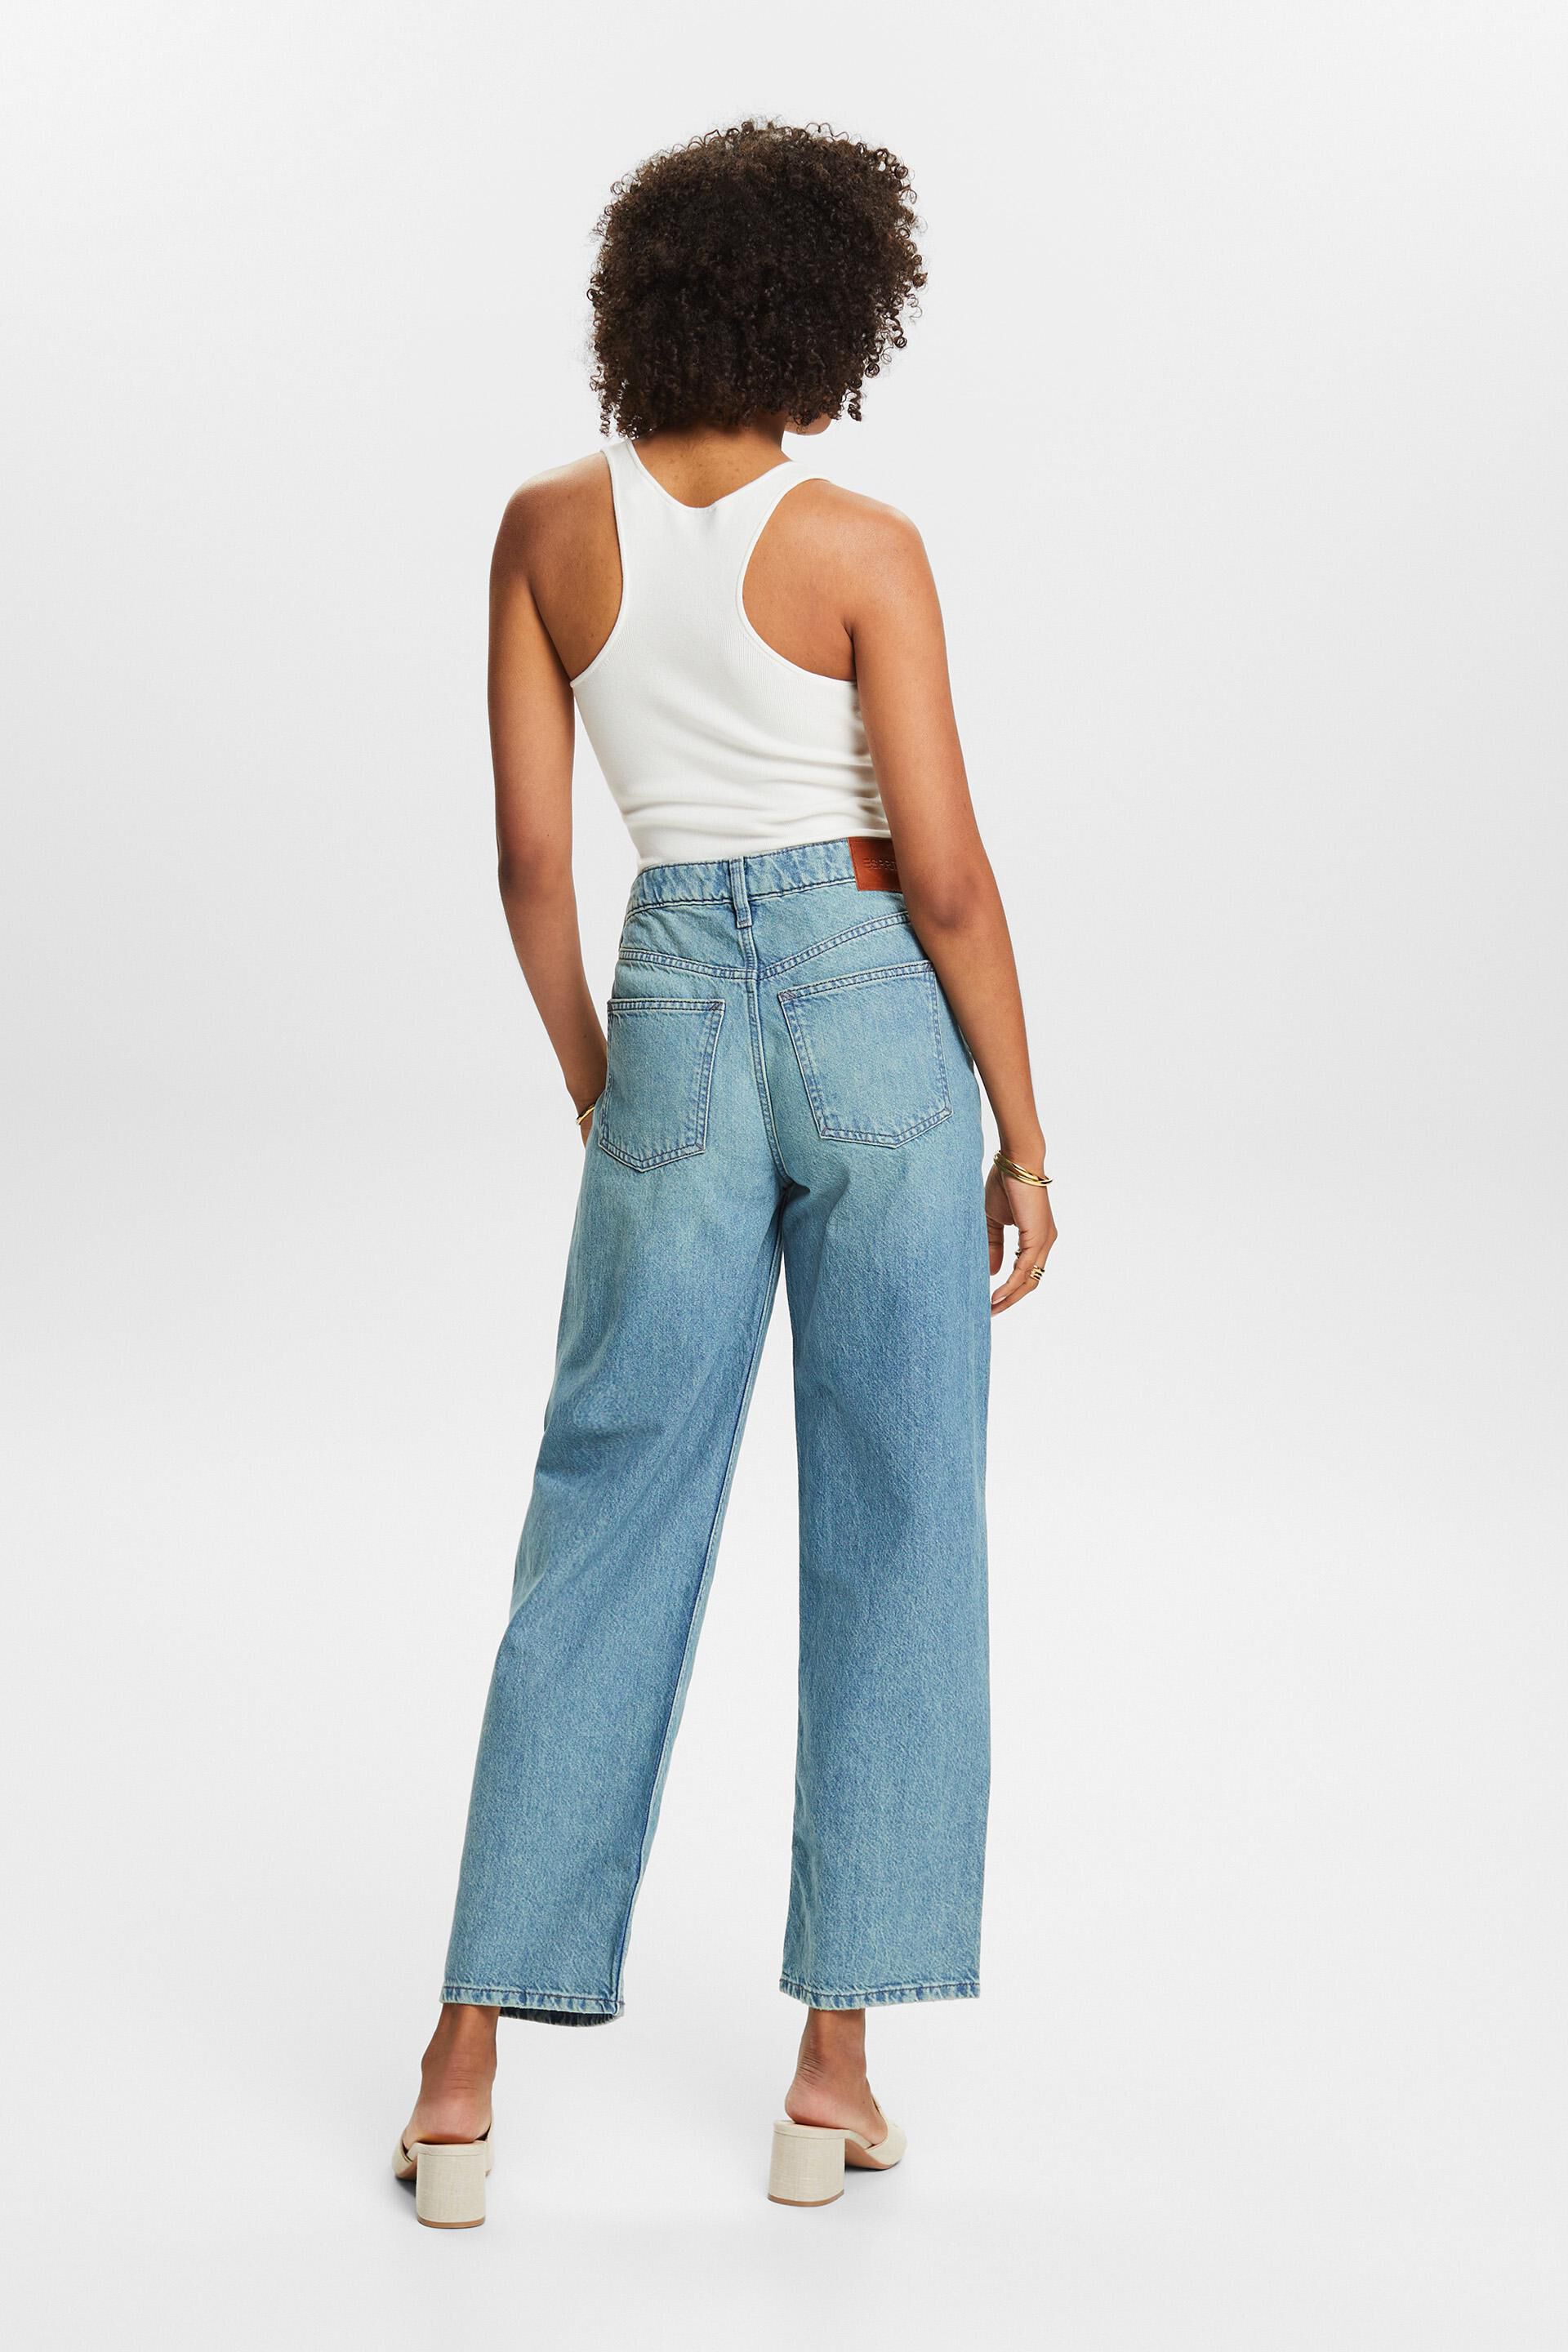 SweatyRocks Women's Casual Loose Ripped Denim Pants Distressed Wide Leg  Jeans | Wide leg jeans, Ripped jeans, Ripped denim pants